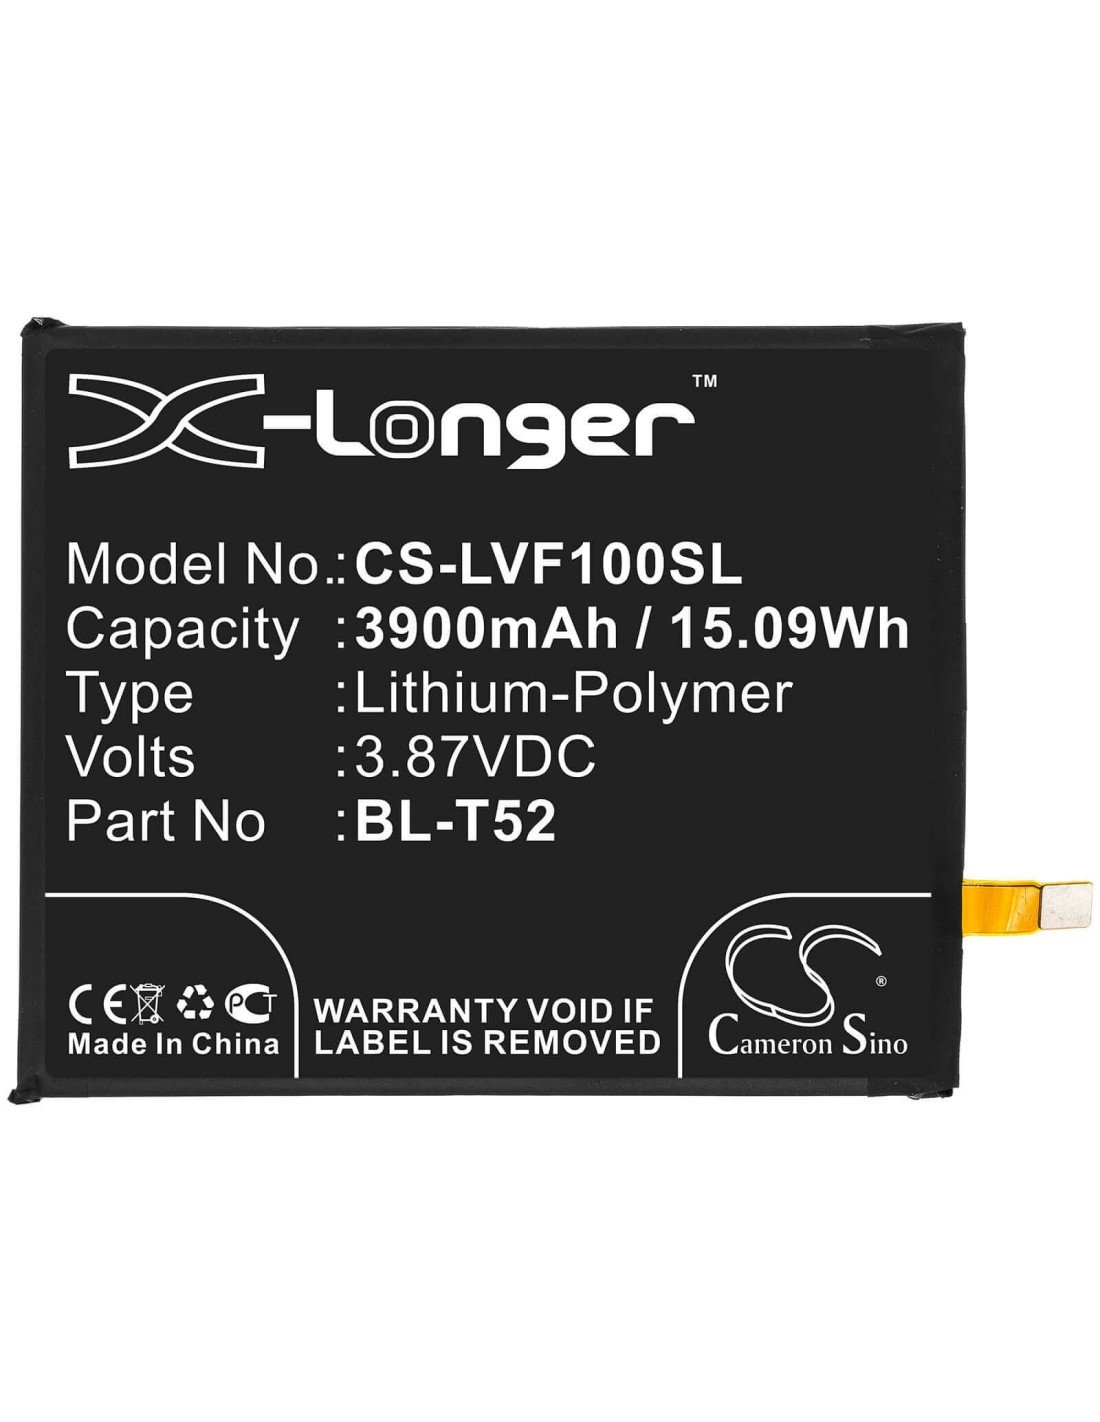 Battery for Lg, F100, F100emw, F100n 3.87V, 3900mAh - 15.09Wh